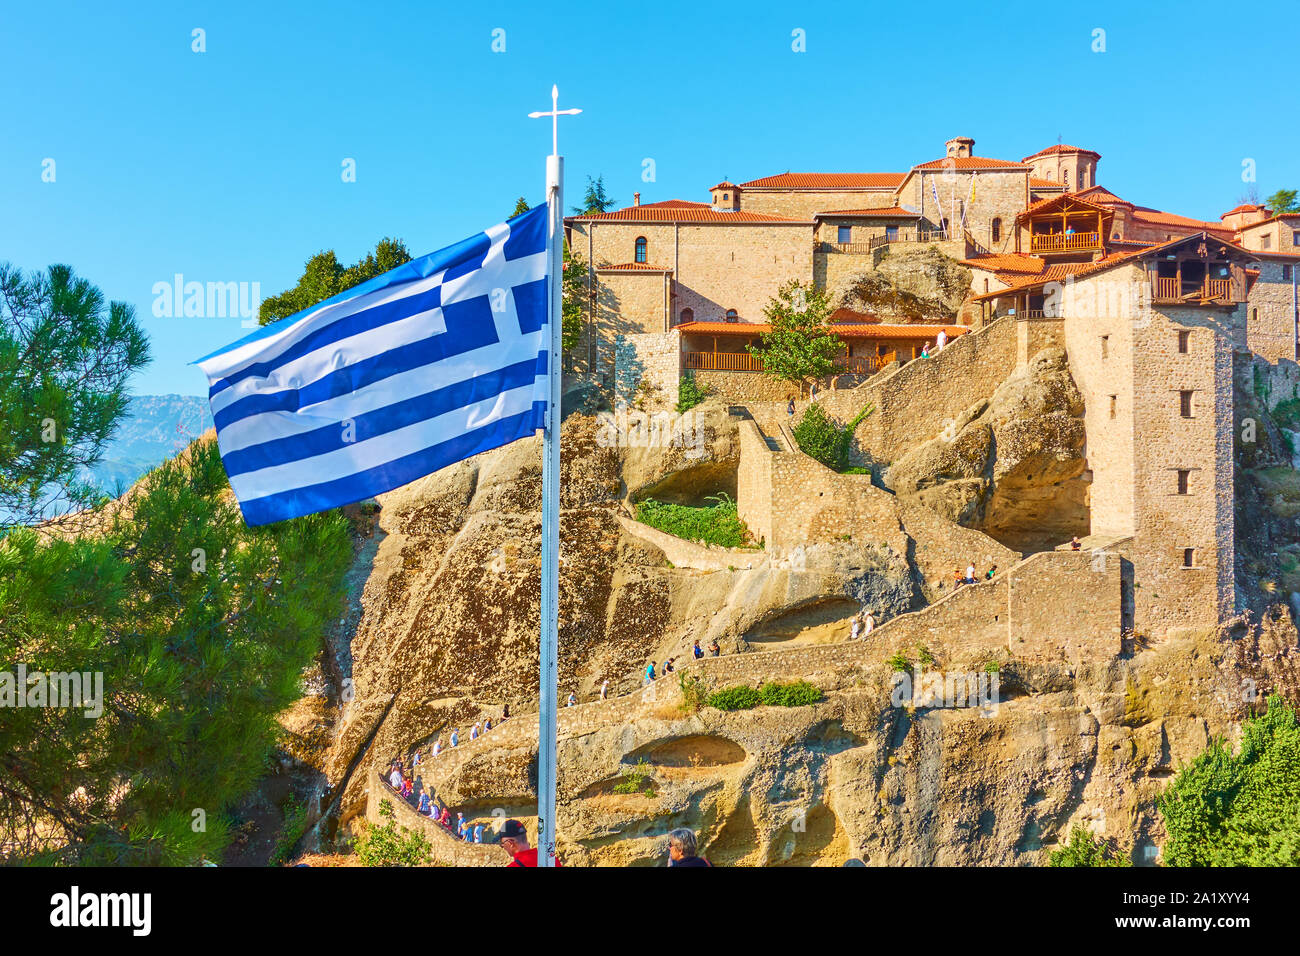 Griechische Fahne am Mast in der Nähe des Klosters von großer Wort meteoron in Meteora, Griechenland Stockfoto